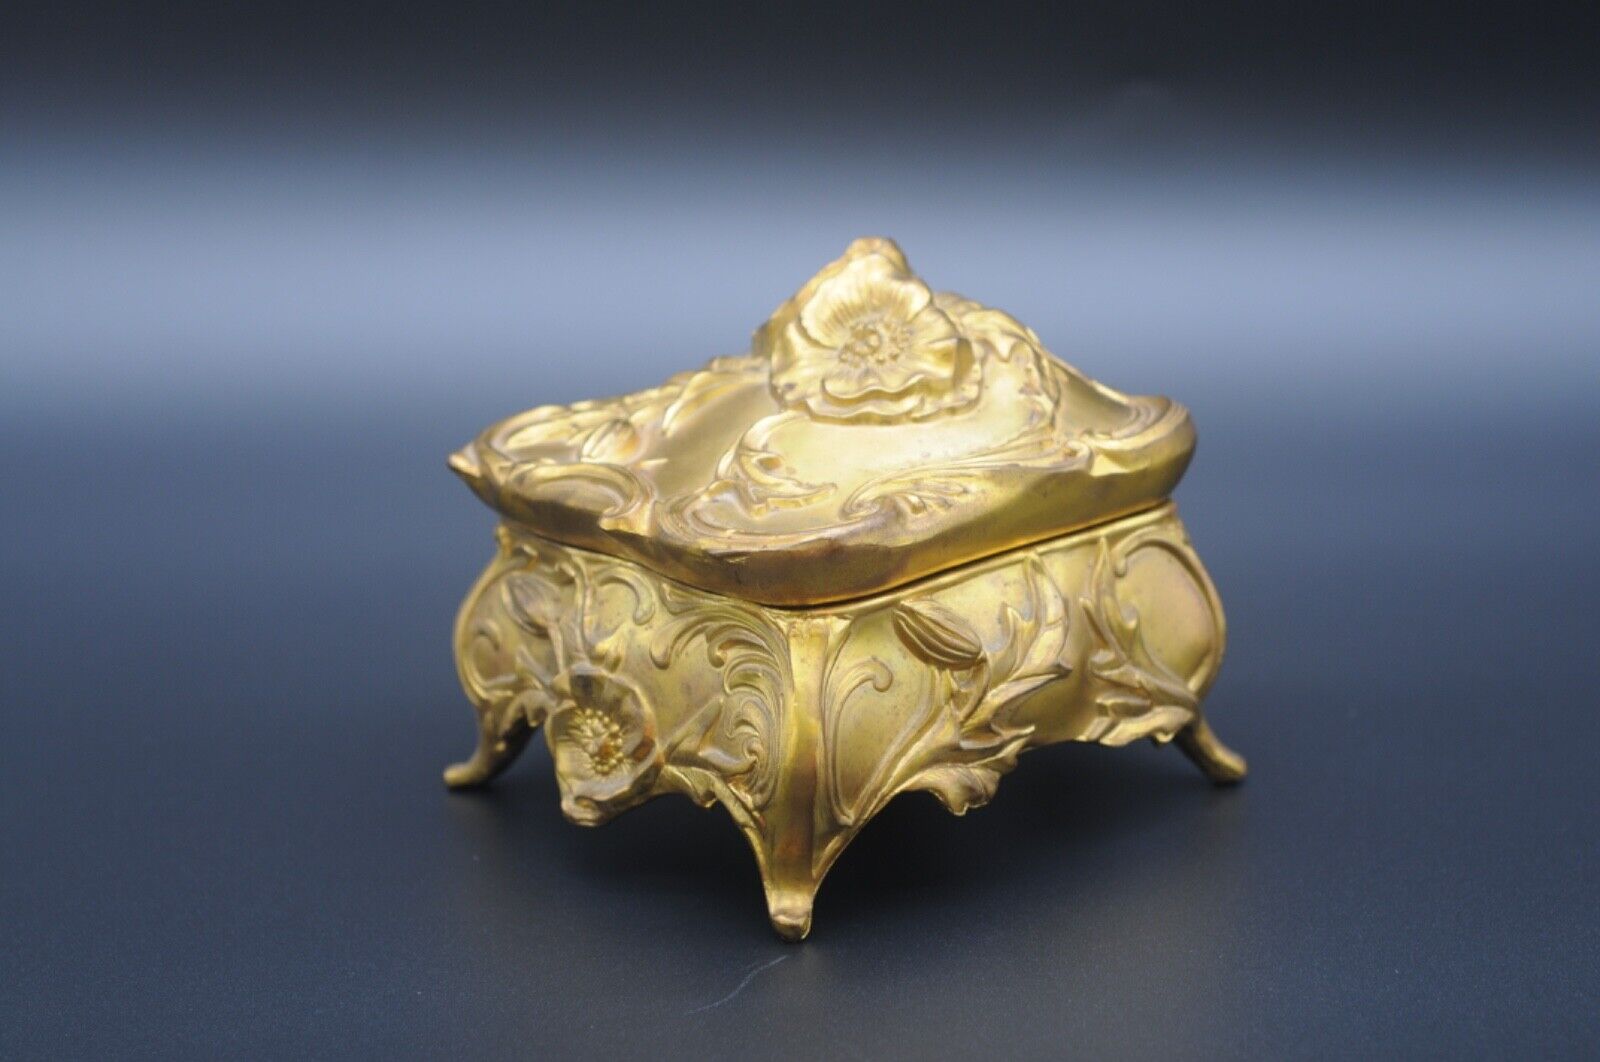 Large Antique 19th Century Bronze Art Nouveau Footed Jewelry/Casket Dresser Box